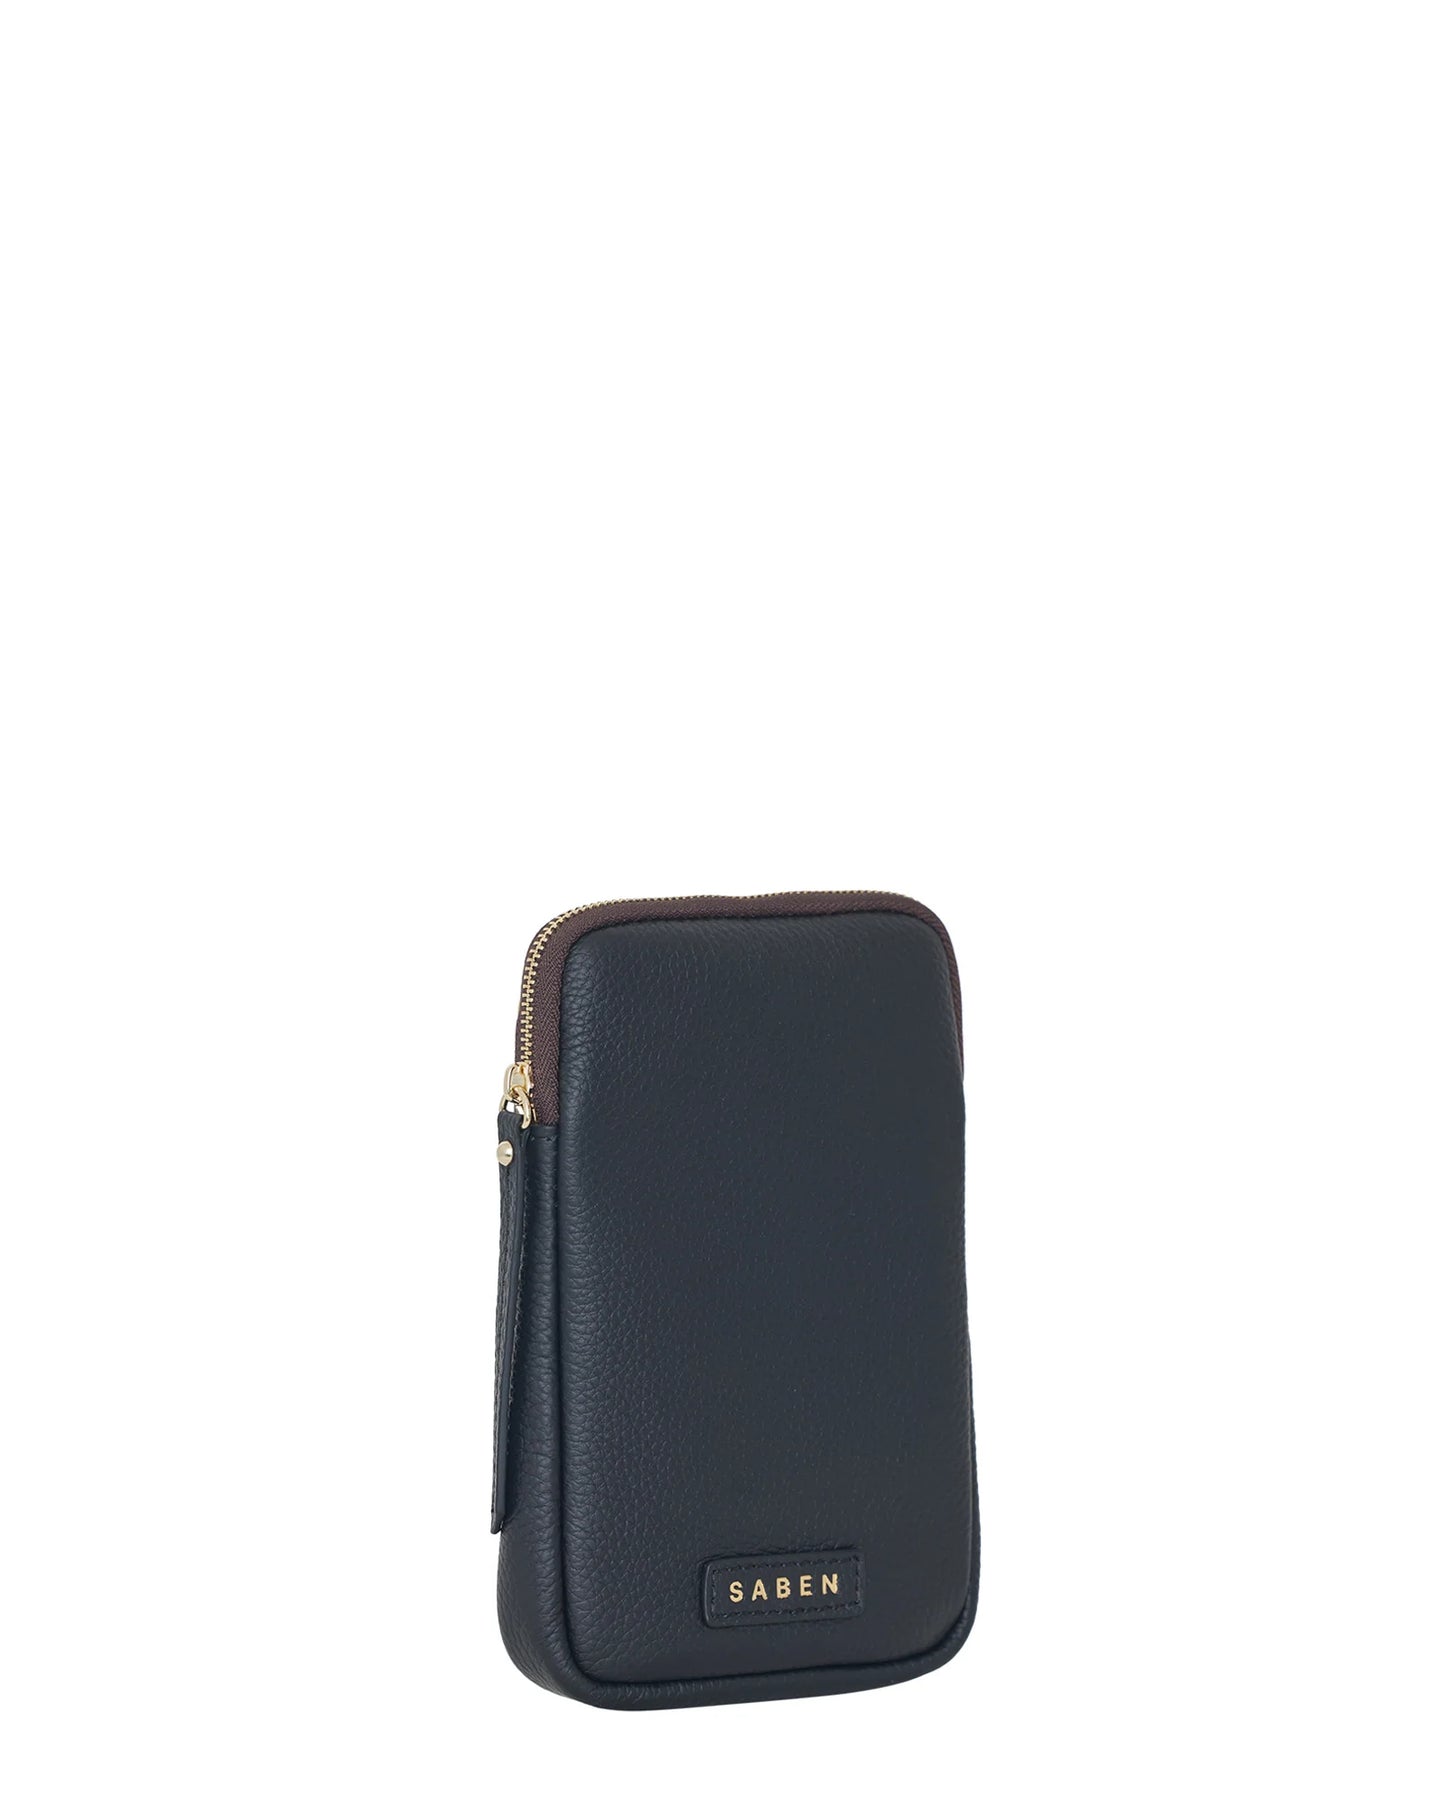 SABEN // Nikko Phone Sling BLACK